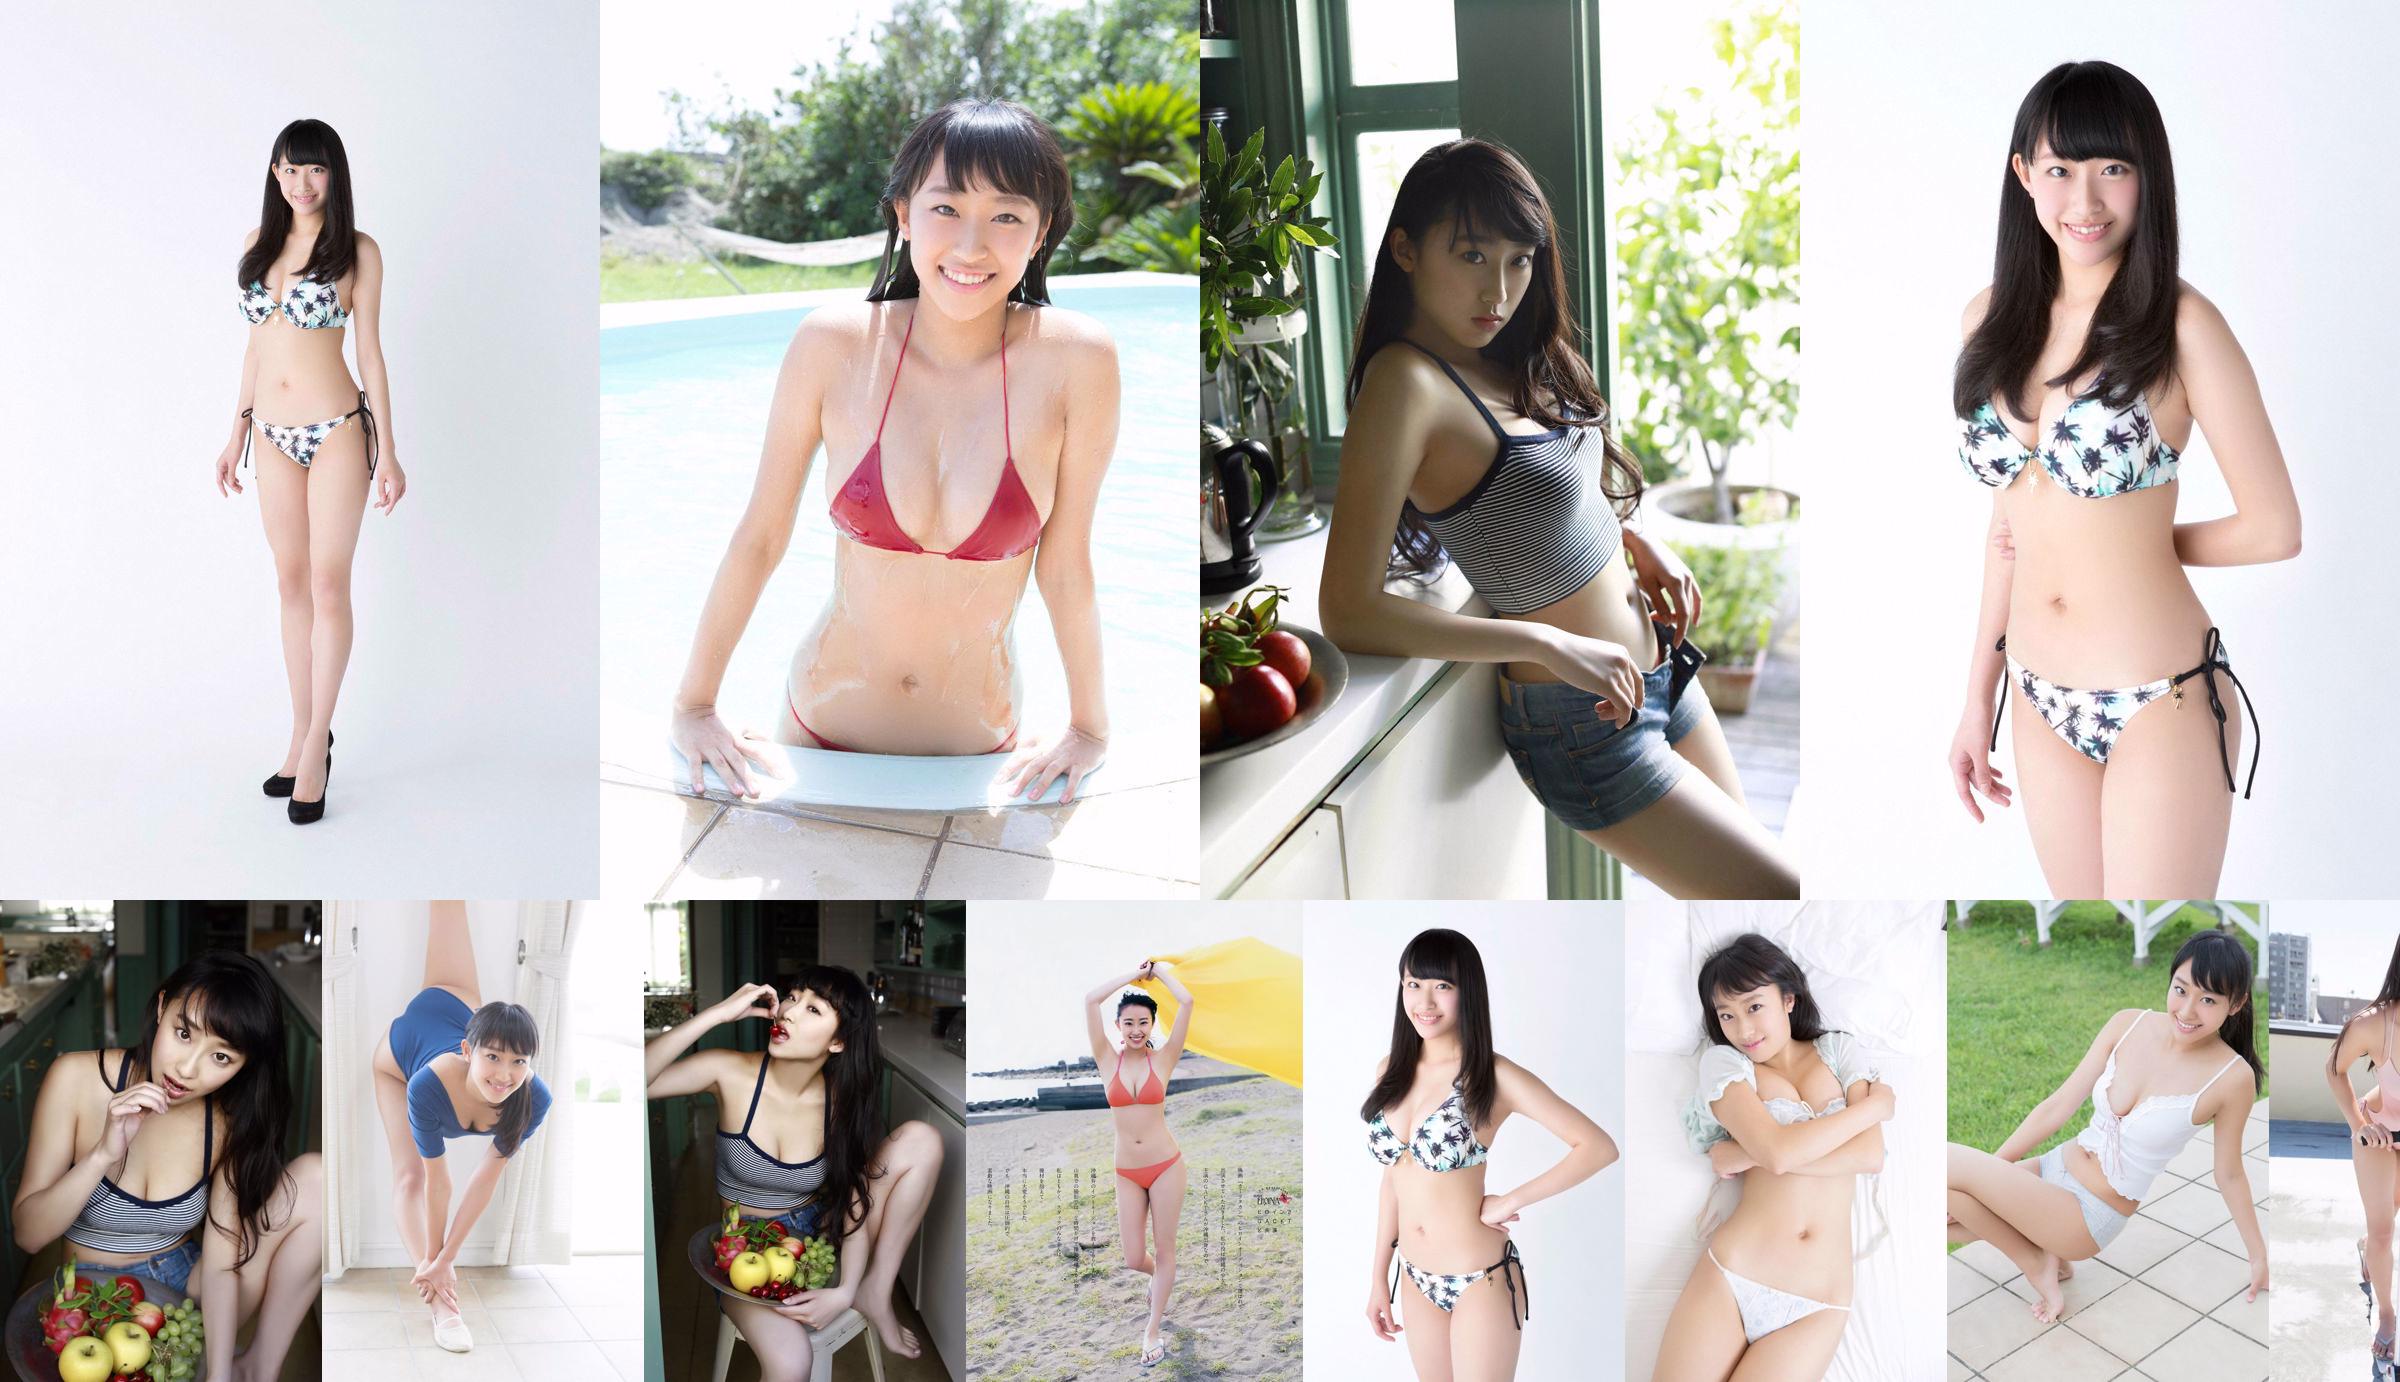 Matsura Sa Yuri Matsura Kaori ミリオンガールズZ [Young Animal] 2014 No.14 Photo Magazine No.92317d Seite 1